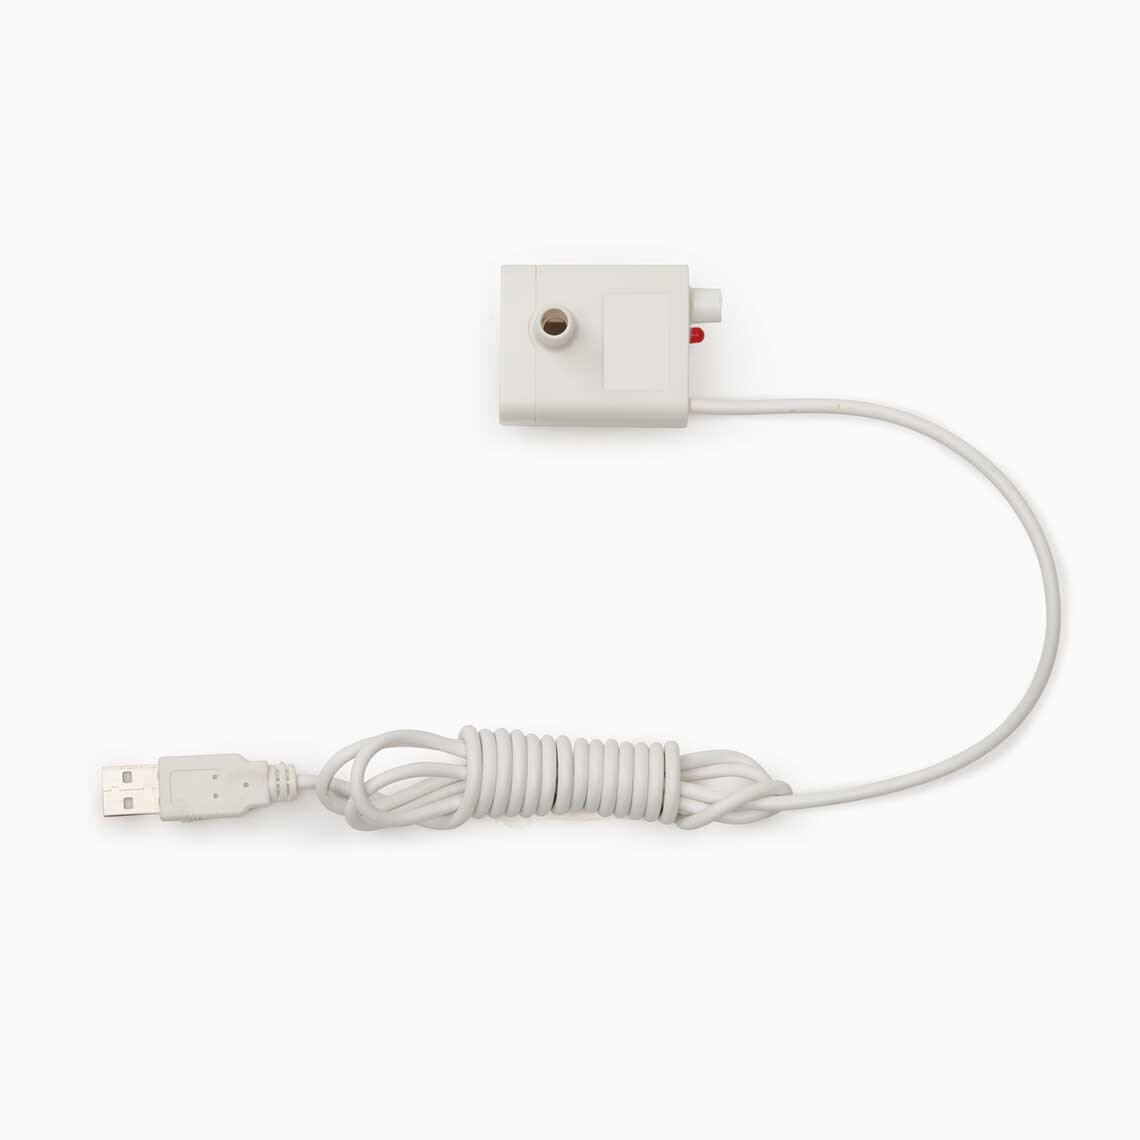 Hg44833 - Pompe USB de rechange pour abreuvoir électrique - Catit Pixi